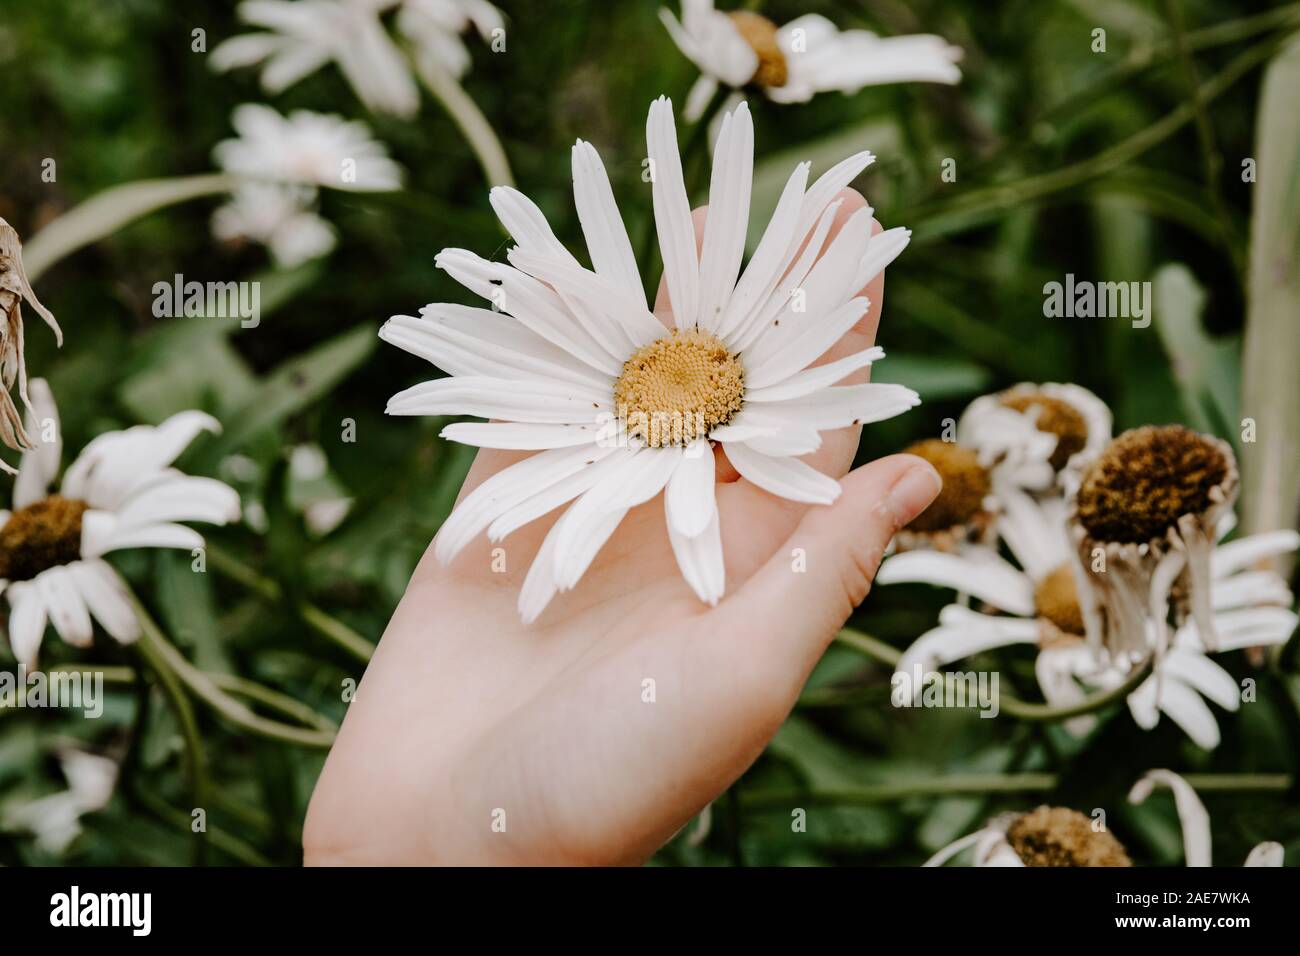 Open hand holding Daisy Daisy, grand amoureux de la nature, concept, fleurs de printemps, fleurs blanches, féminine, délicate, la tendresse, les petites choses Banque D'Images